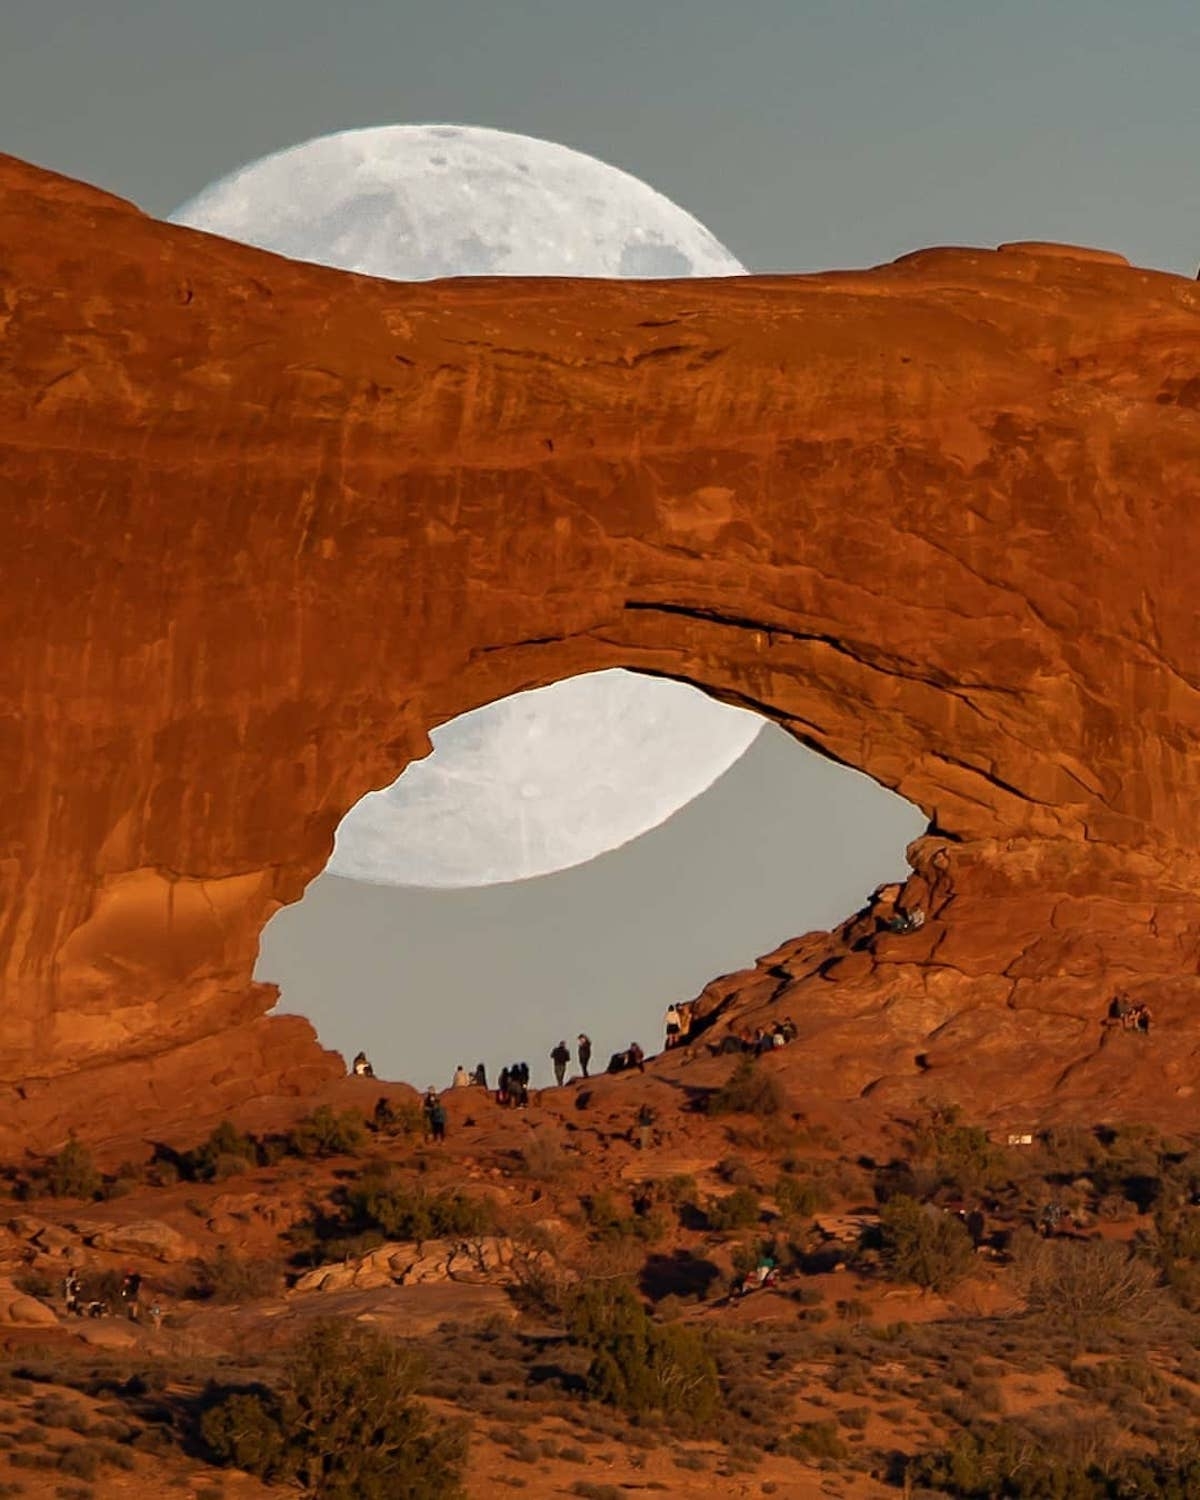 Hình ảnh siêu thực về mặt trăng khổng lồ trong sa mạc - Ảnh 3.